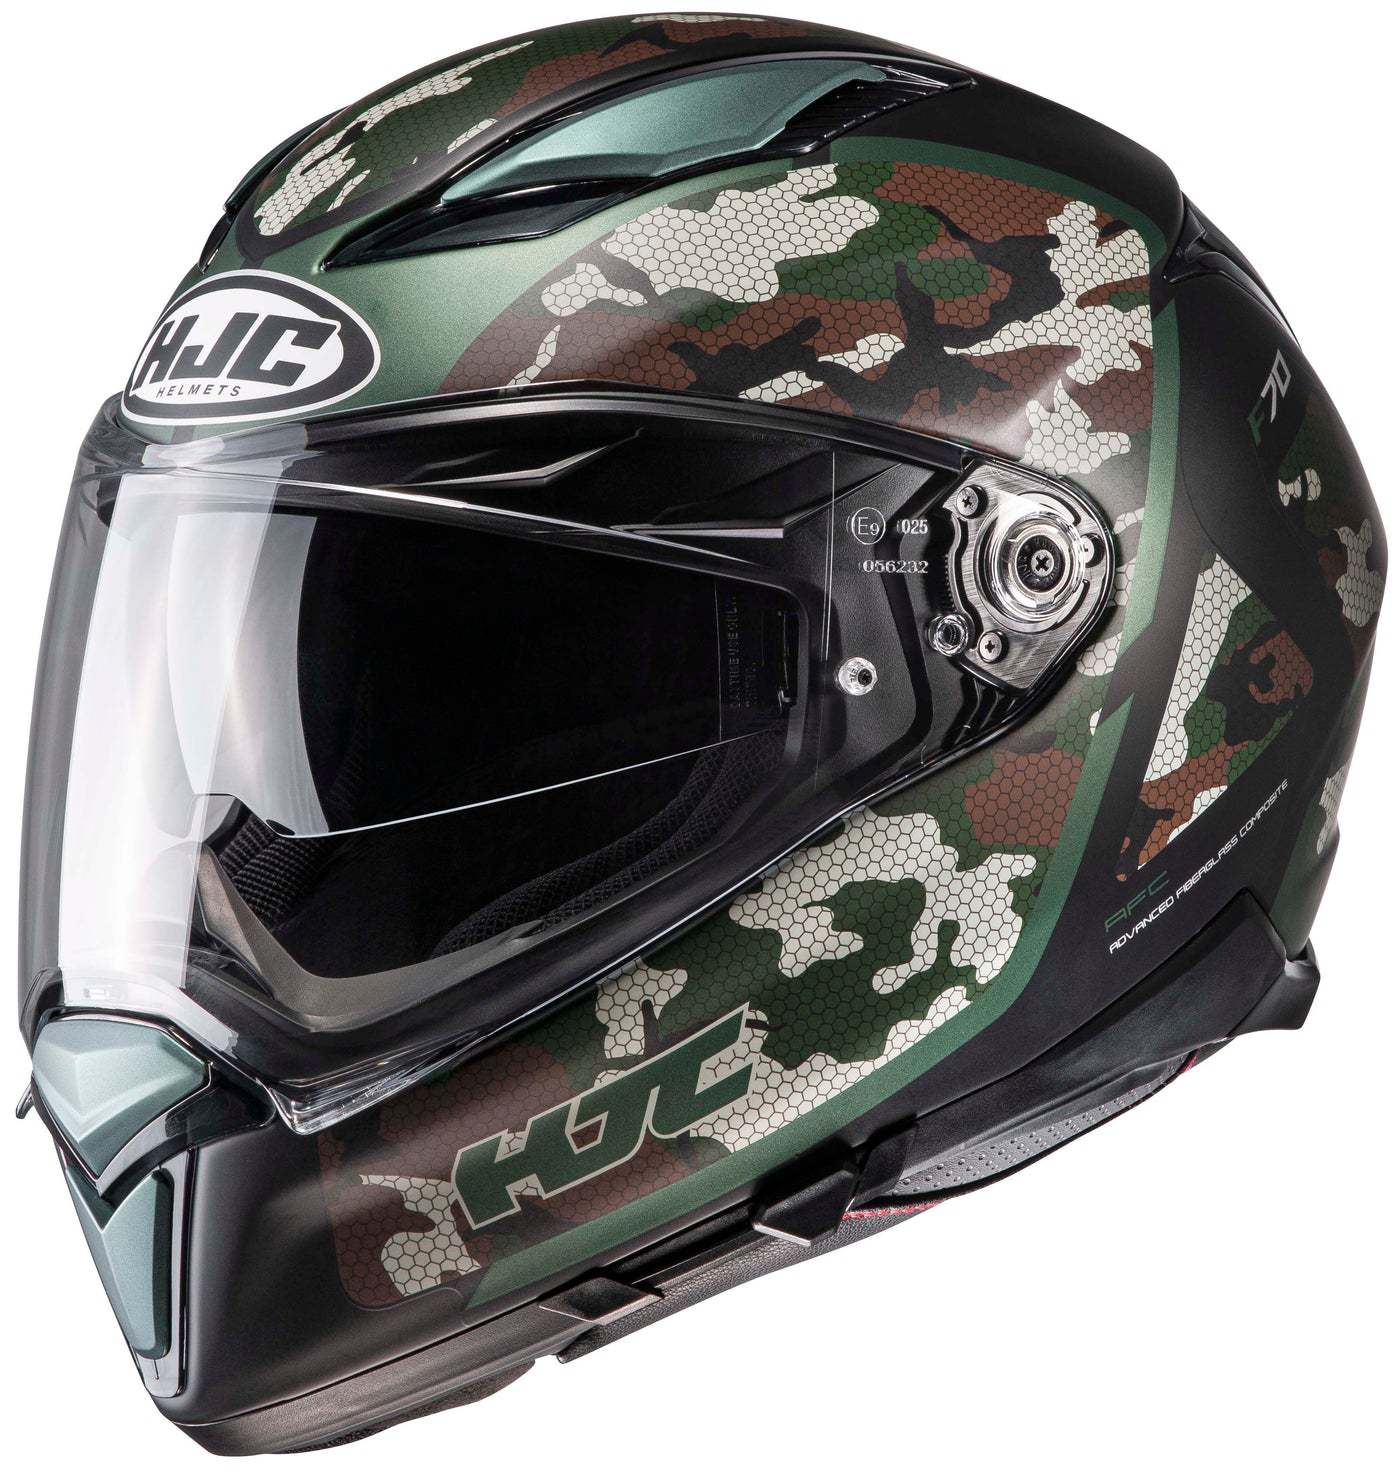 HJC F70 Katra Full Face Motorcycle Helmet